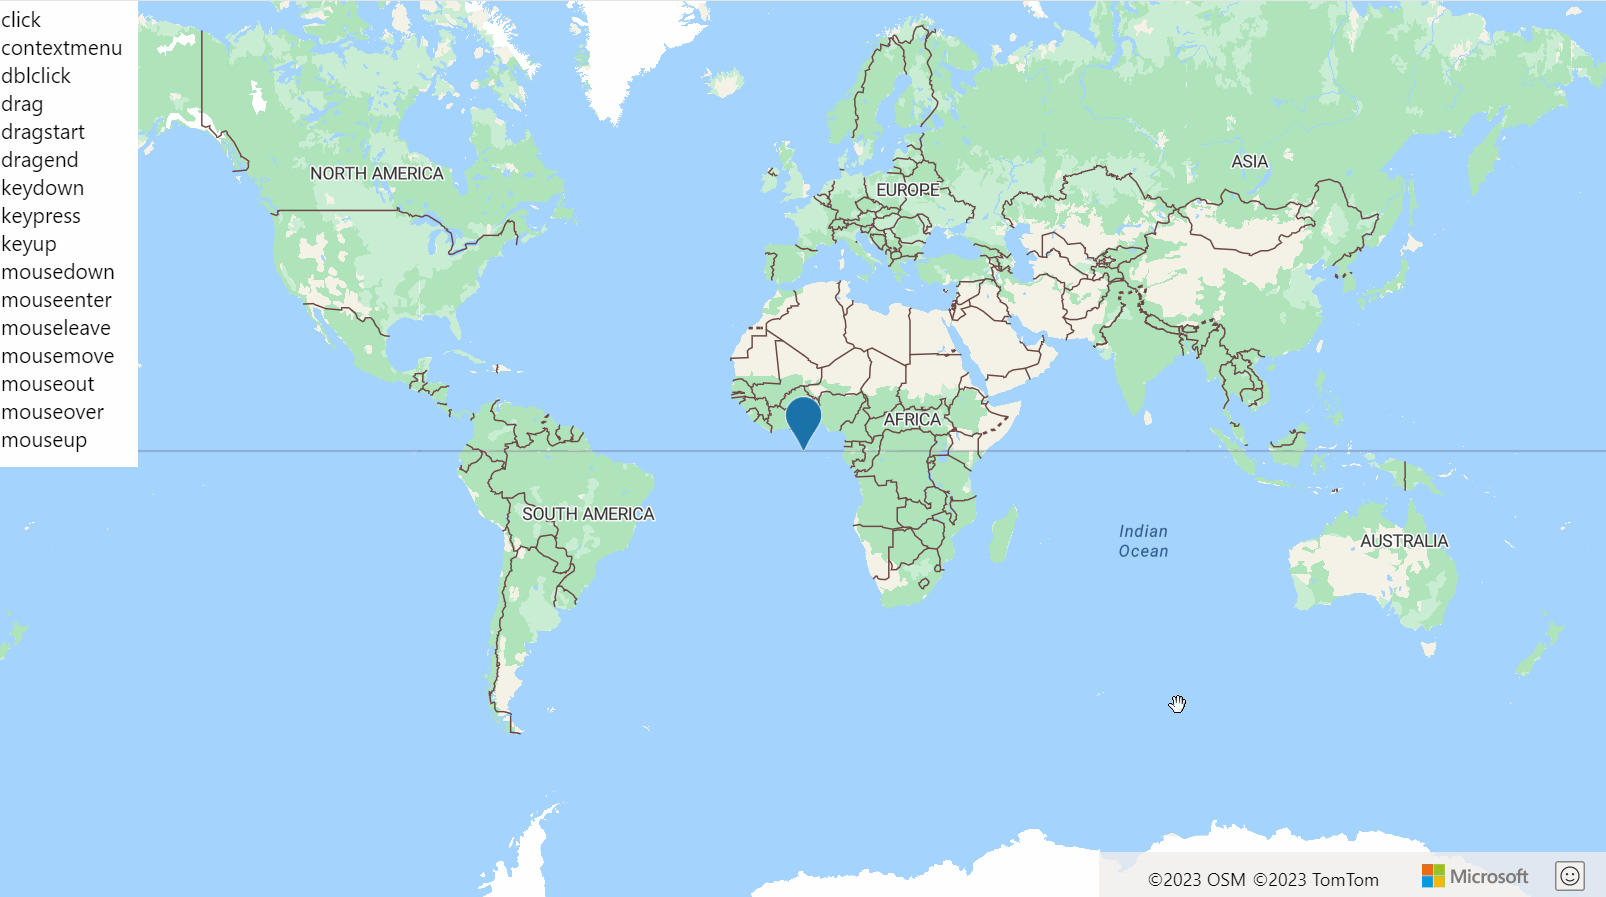 Snímek obrazovky zobrazující mapu světa s htmlmarkerem a seznamem událostí HtmlMarker, které se při spuštění události zvýrazní zeleně.